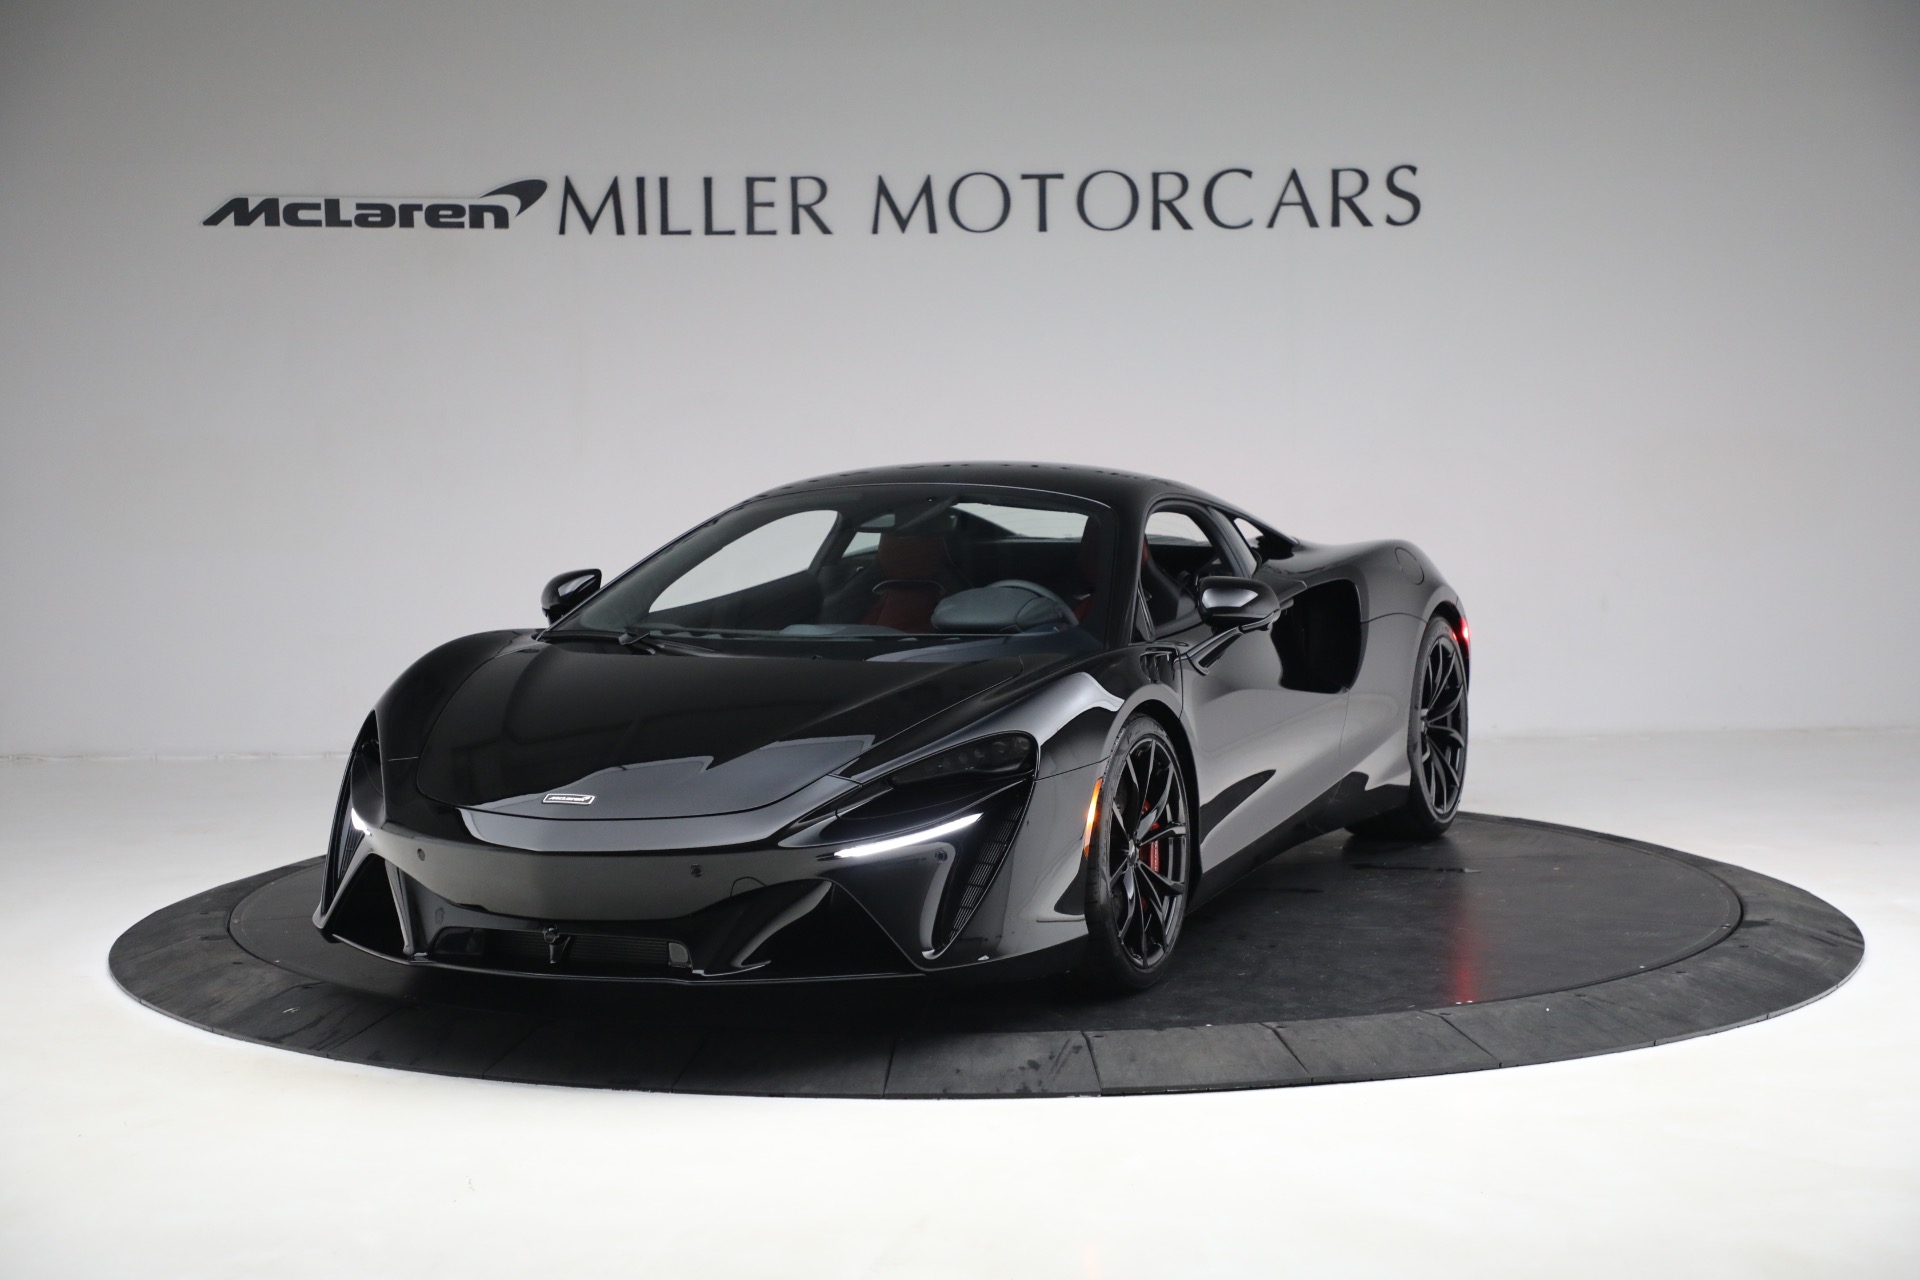 New 2023 McLaren Artura TechLux for sale $274,210 at Bugatti of Greenwich in Greenwich CT 06830 1